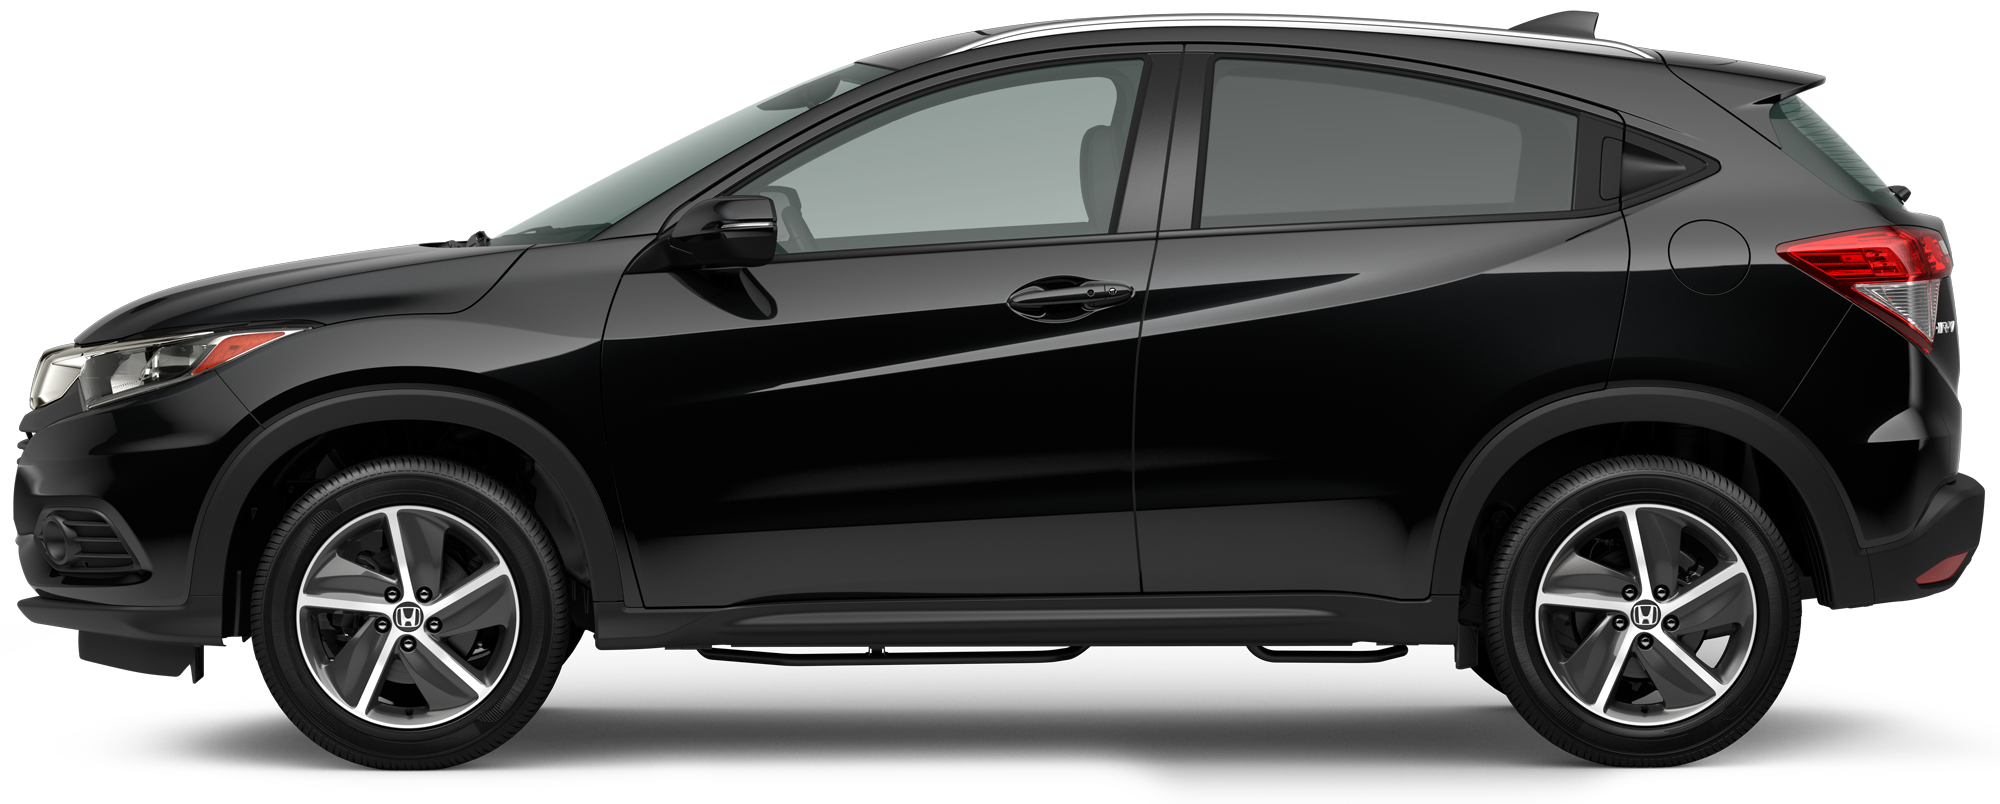 New 2022 Honda HRV for Sale in Poway Poway Honda